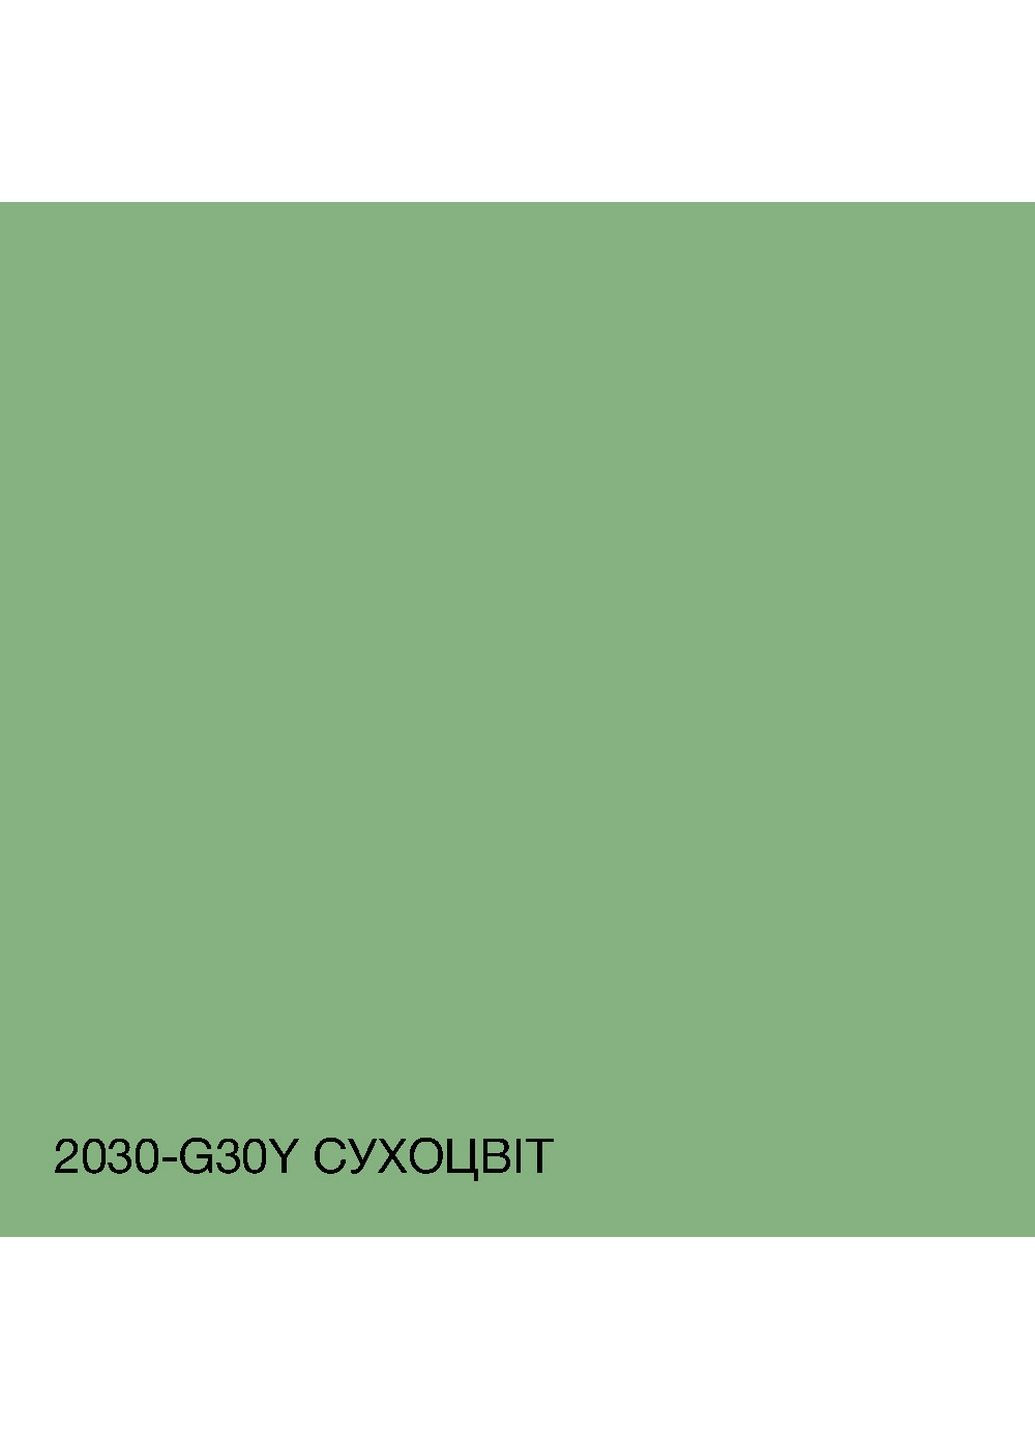 Краска фасадная акрил-латексная 2030-G30Y 5 л SkyLine (289463375)